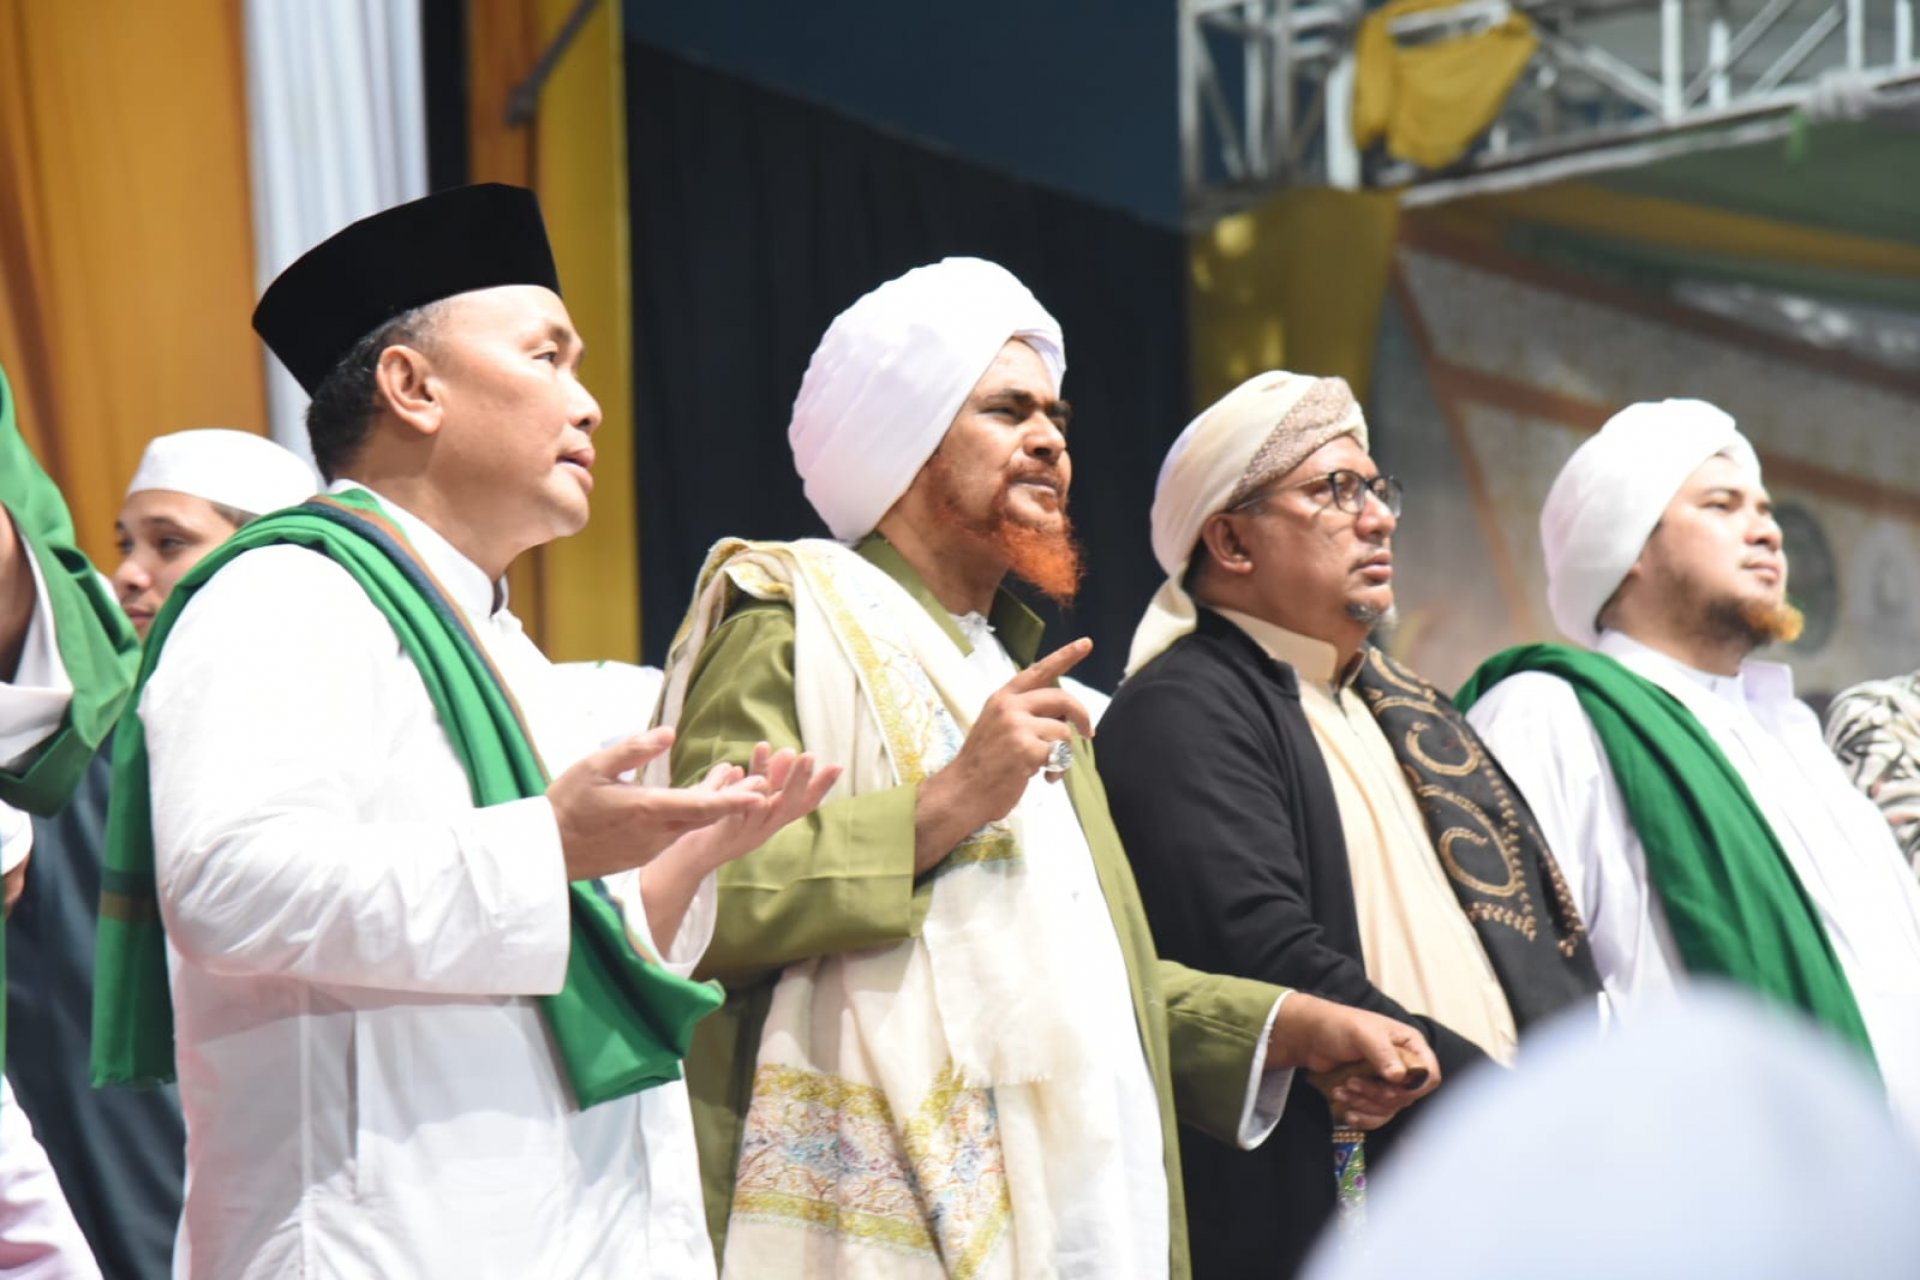 Ratusan Ribu Jemaah Hadiri Tabligh Akbar Guru Mulia Al-Habib Umar Bin Hafidz di Palangka Raya